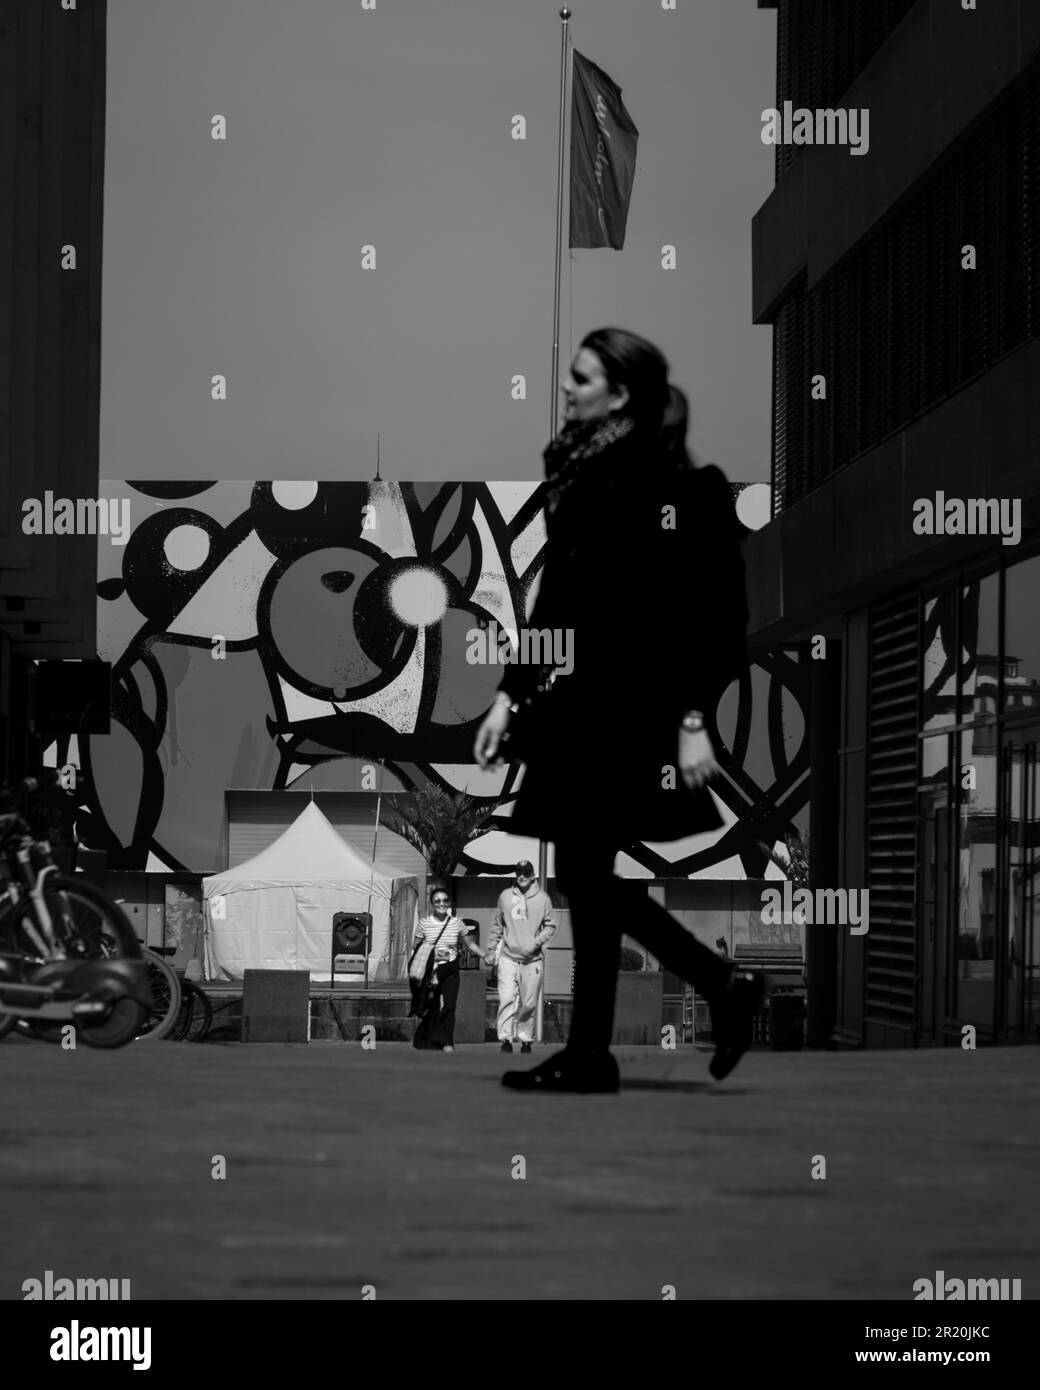 Un giovane adulto cammina lungo una strada urbana in scala di grigi Foto Stock